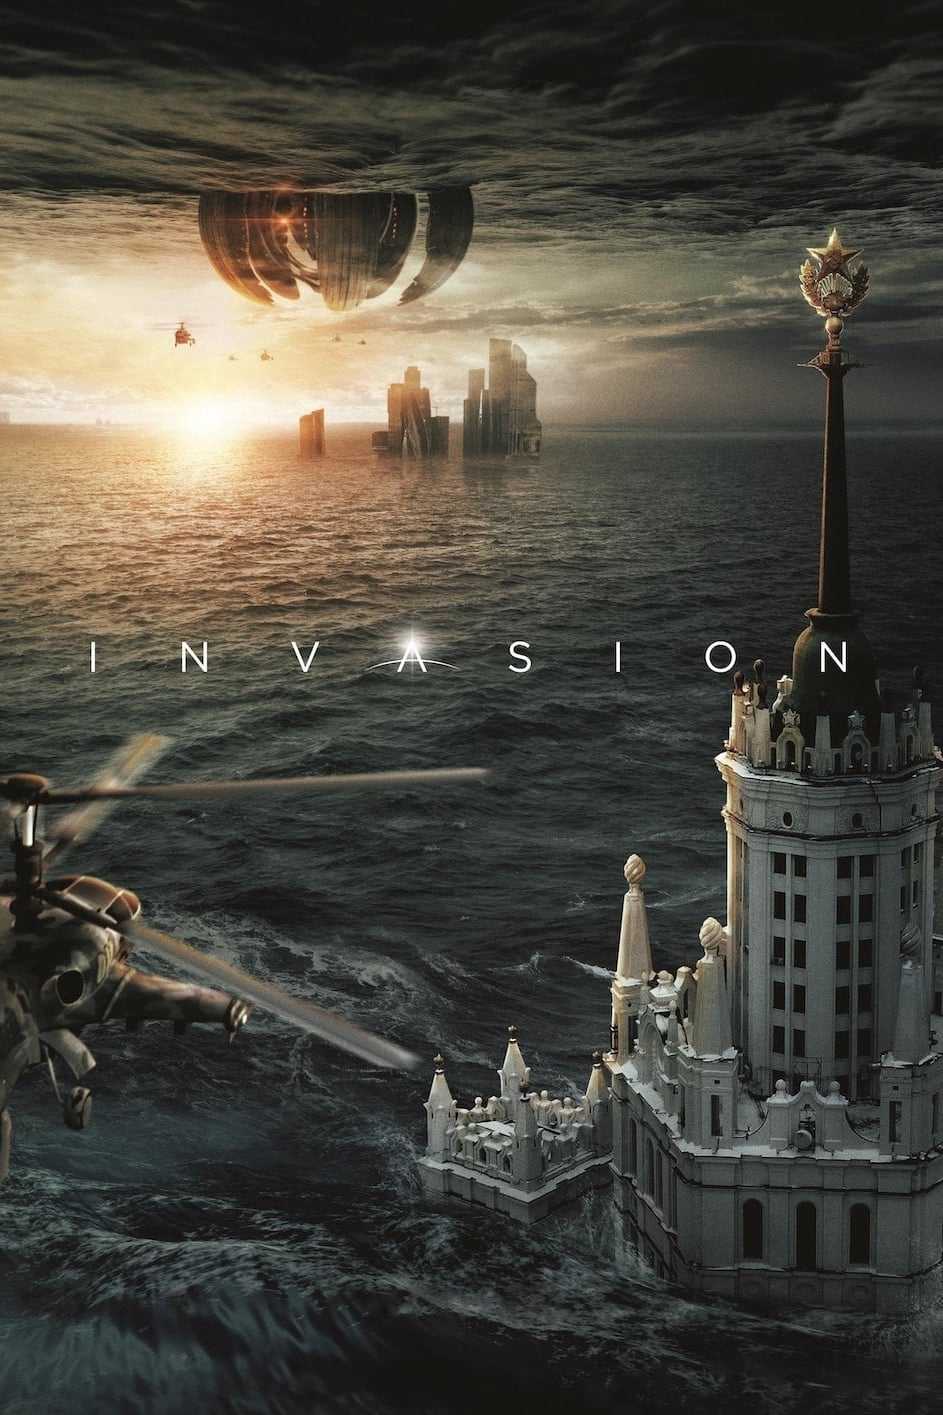 Phòng thủ địa cầu - Invasion